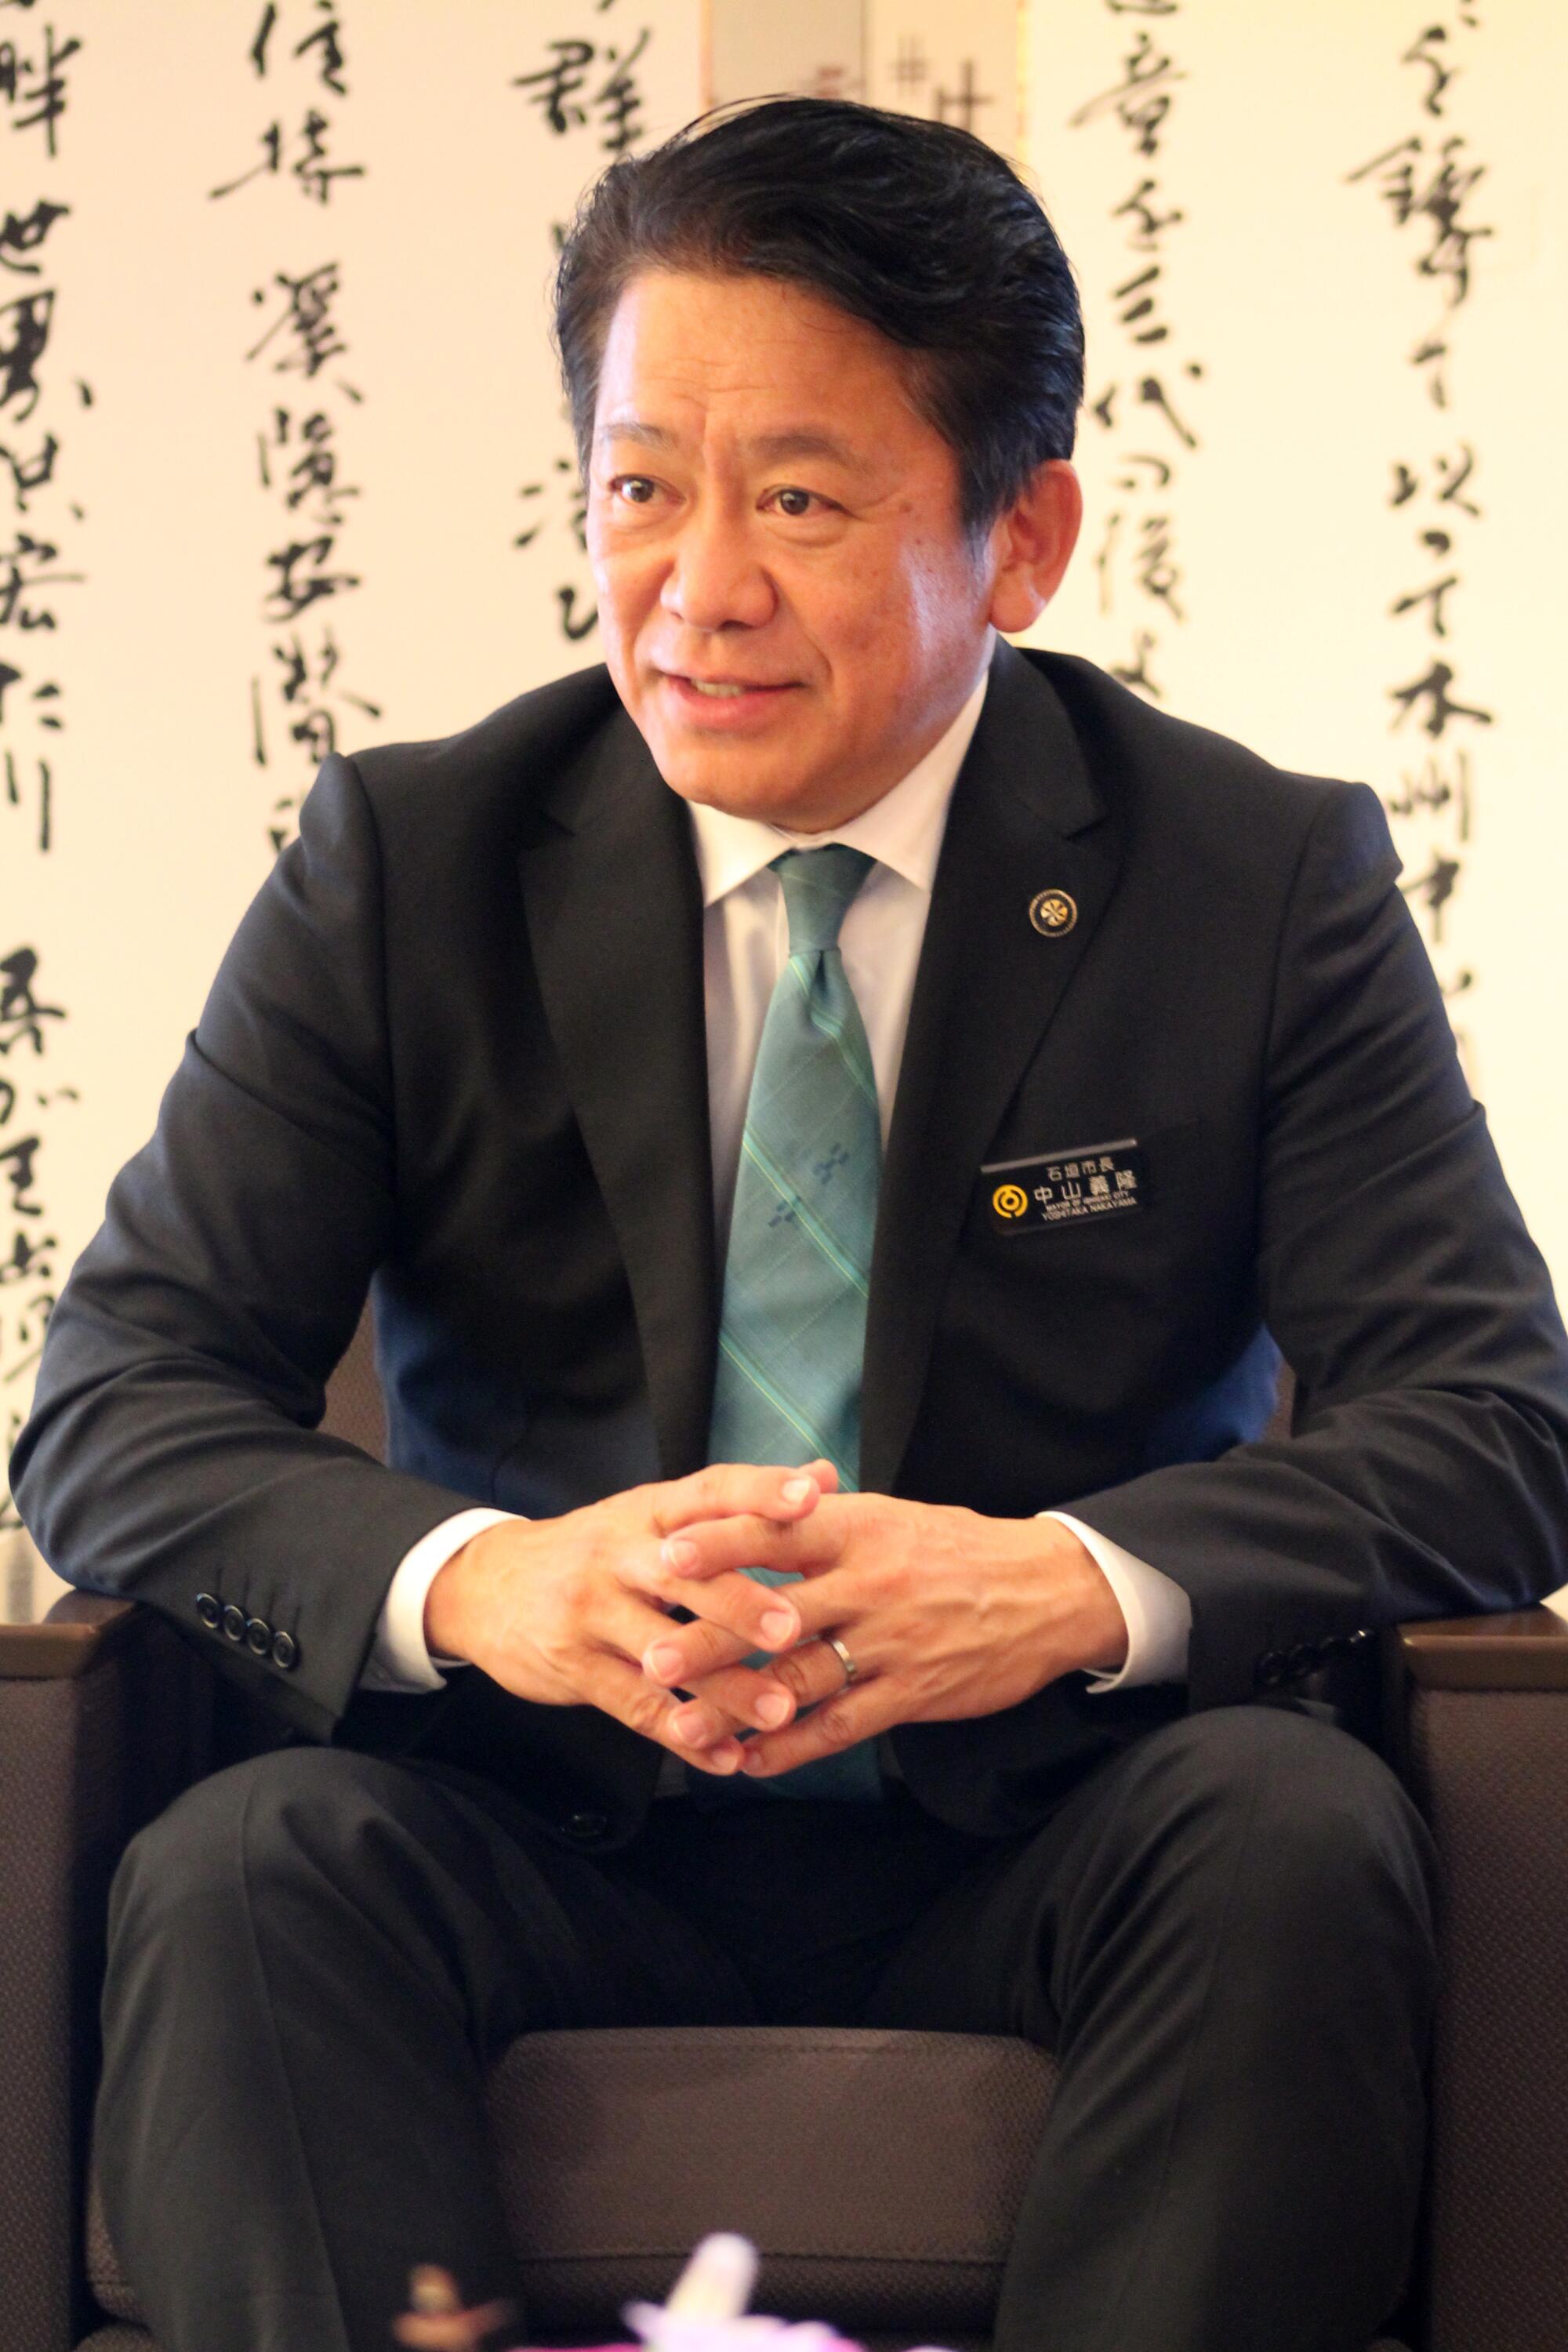 Мэр Исигаки Ёситака Накаяма в своем офисе.